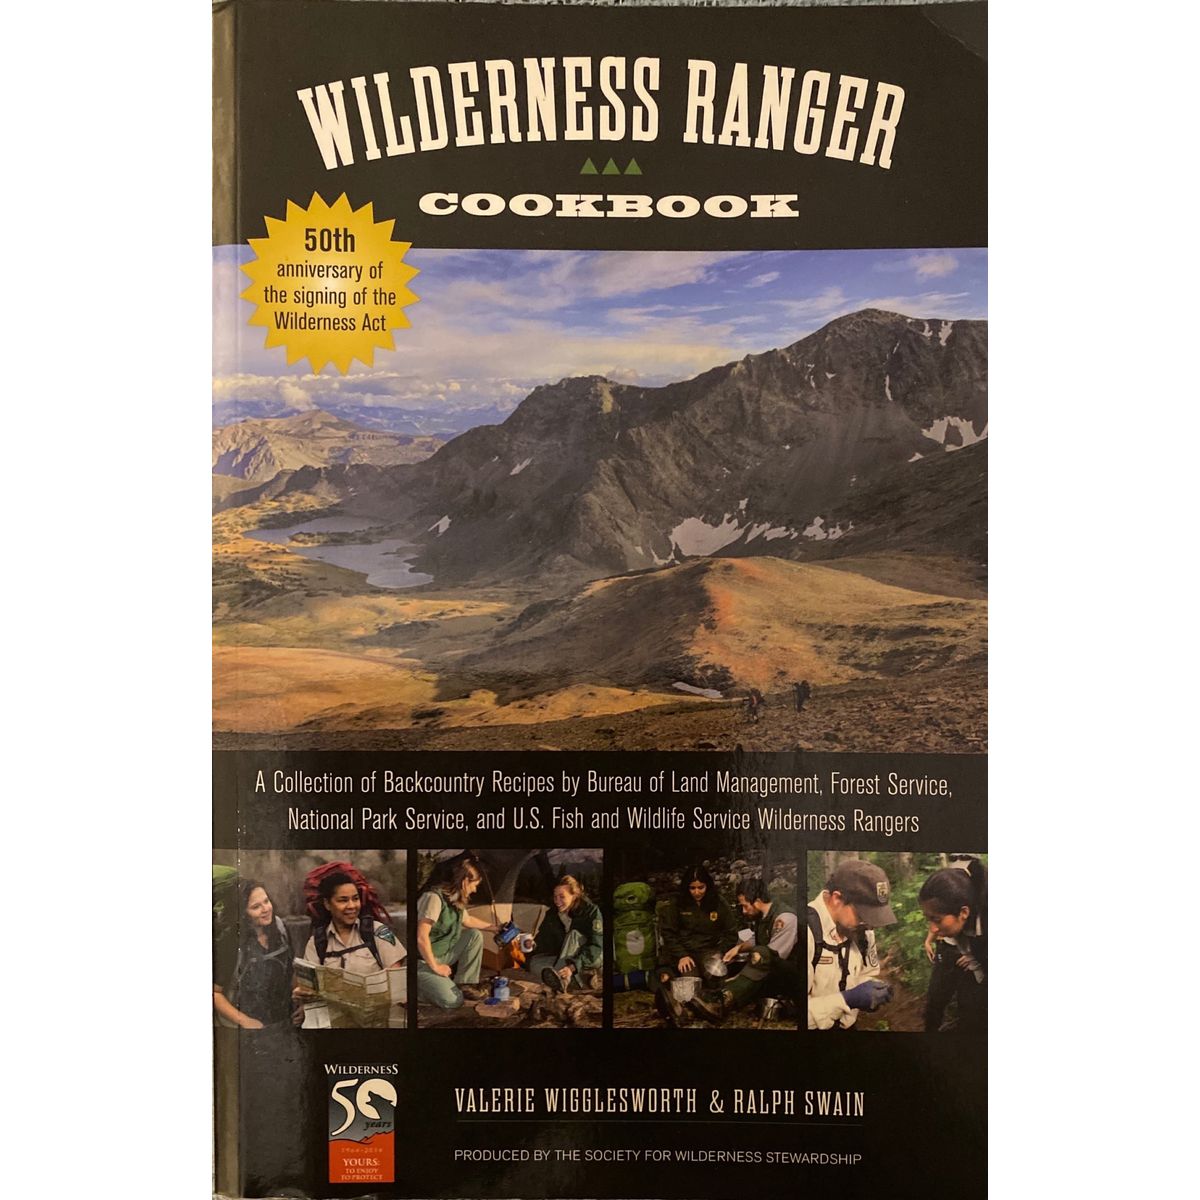 ISBN: 9781493006298 / 1493006290 - Wilderness Ranger Cookbook by Valerie Wigglesworth & Ralph Swain [2014]